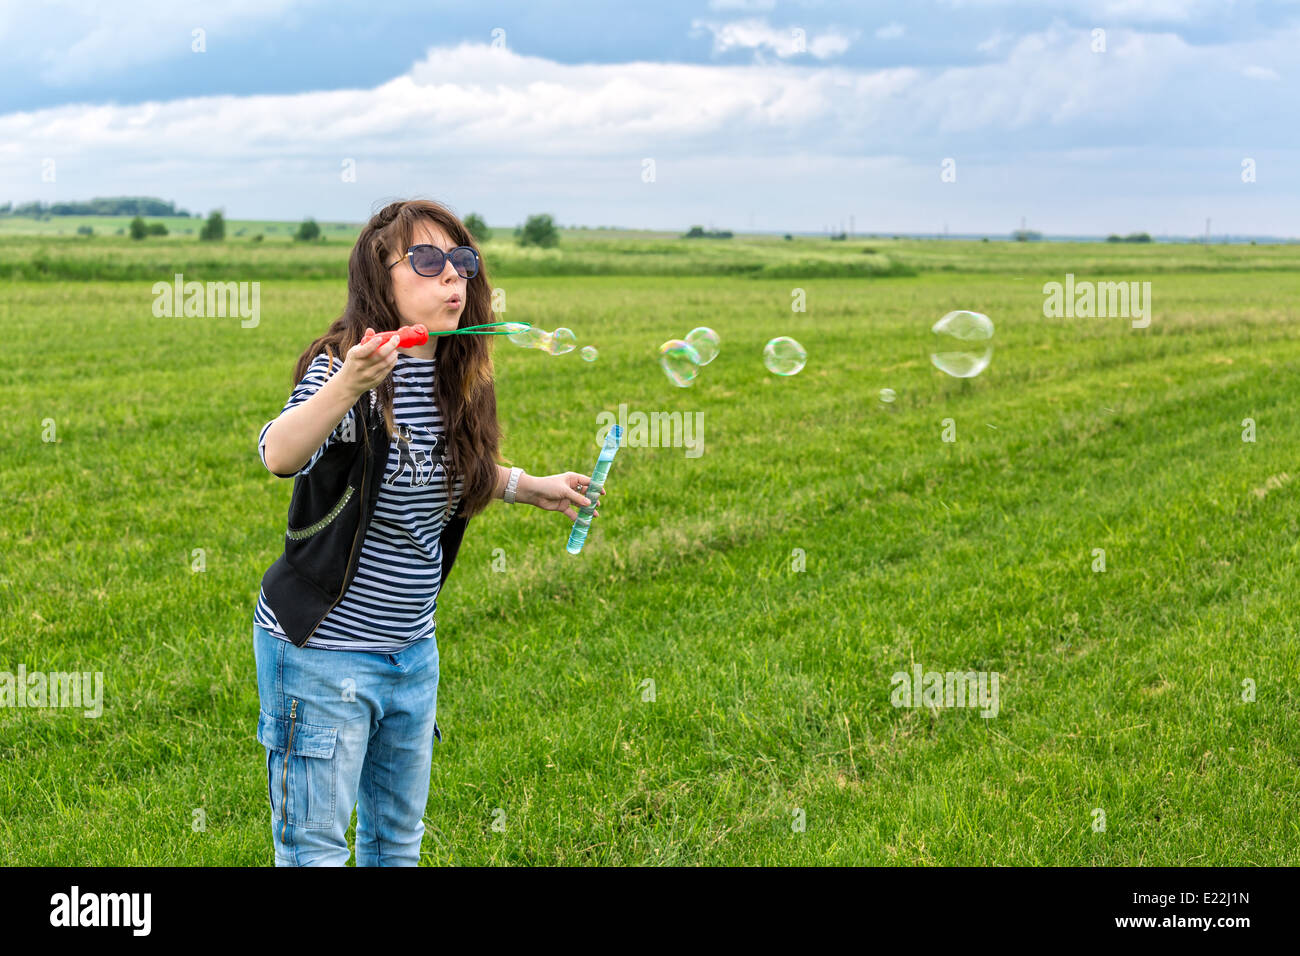 Schöne junge Frau machen Blowing Bubbles auf dem grünen Rasen Stockfoto